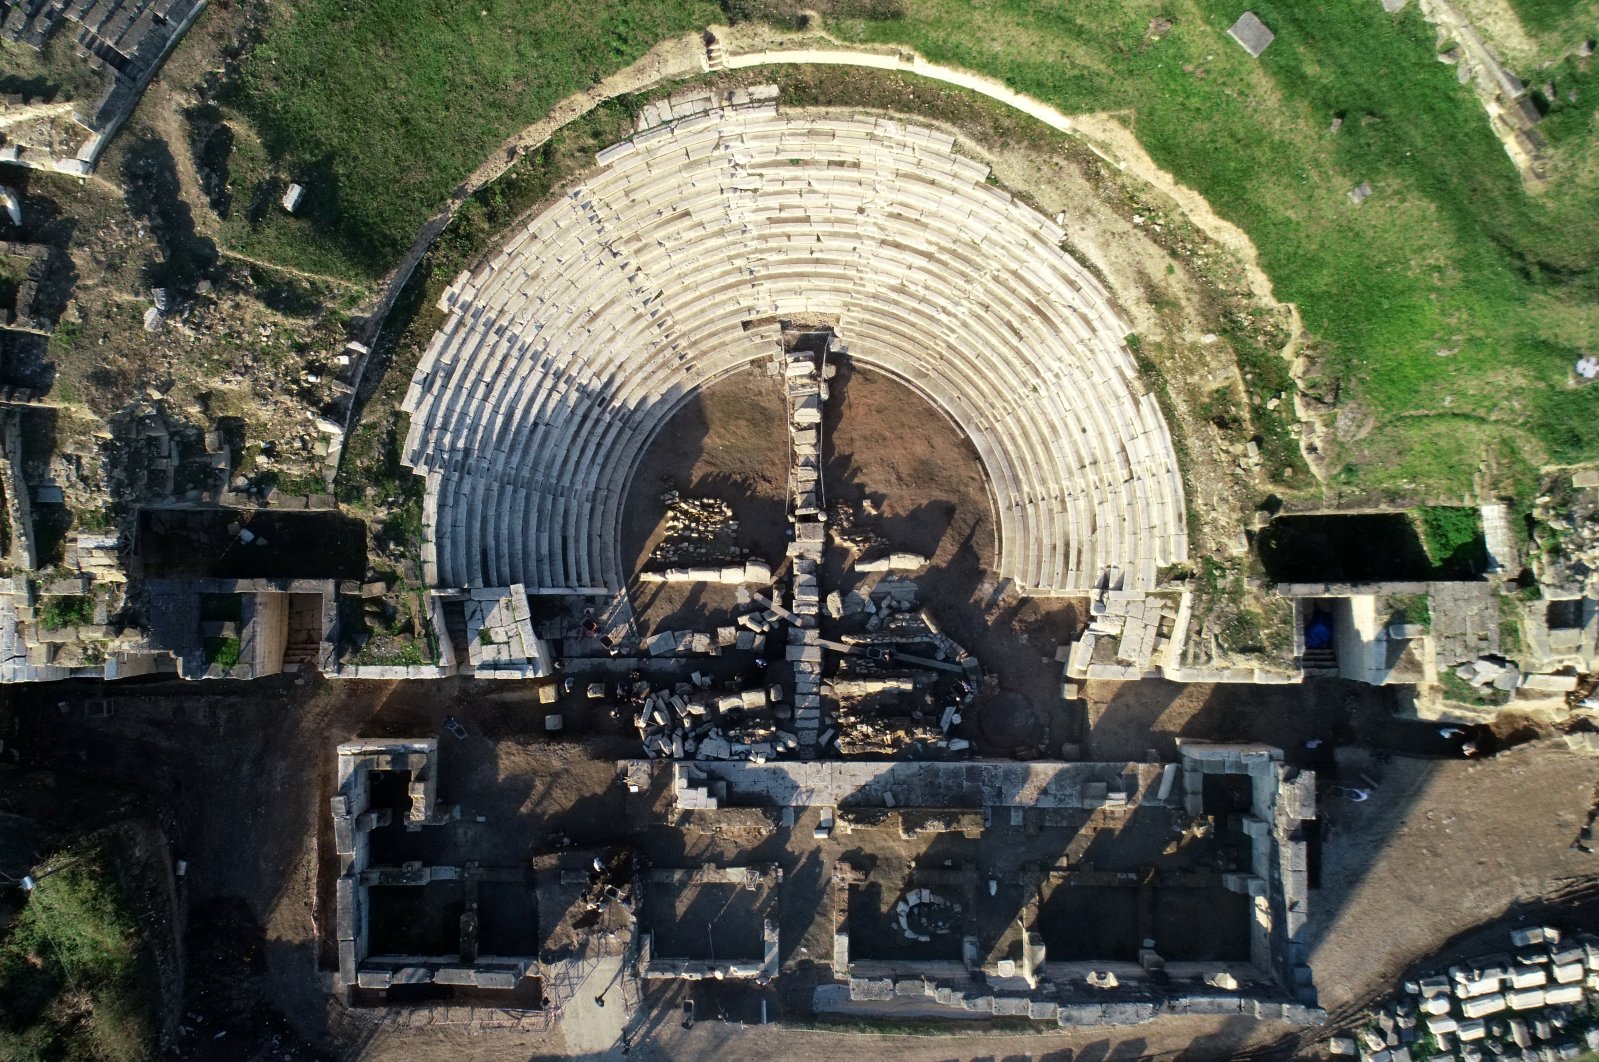 Lantai orkestra terungkap di Ephesus wilayah Laut Hitam